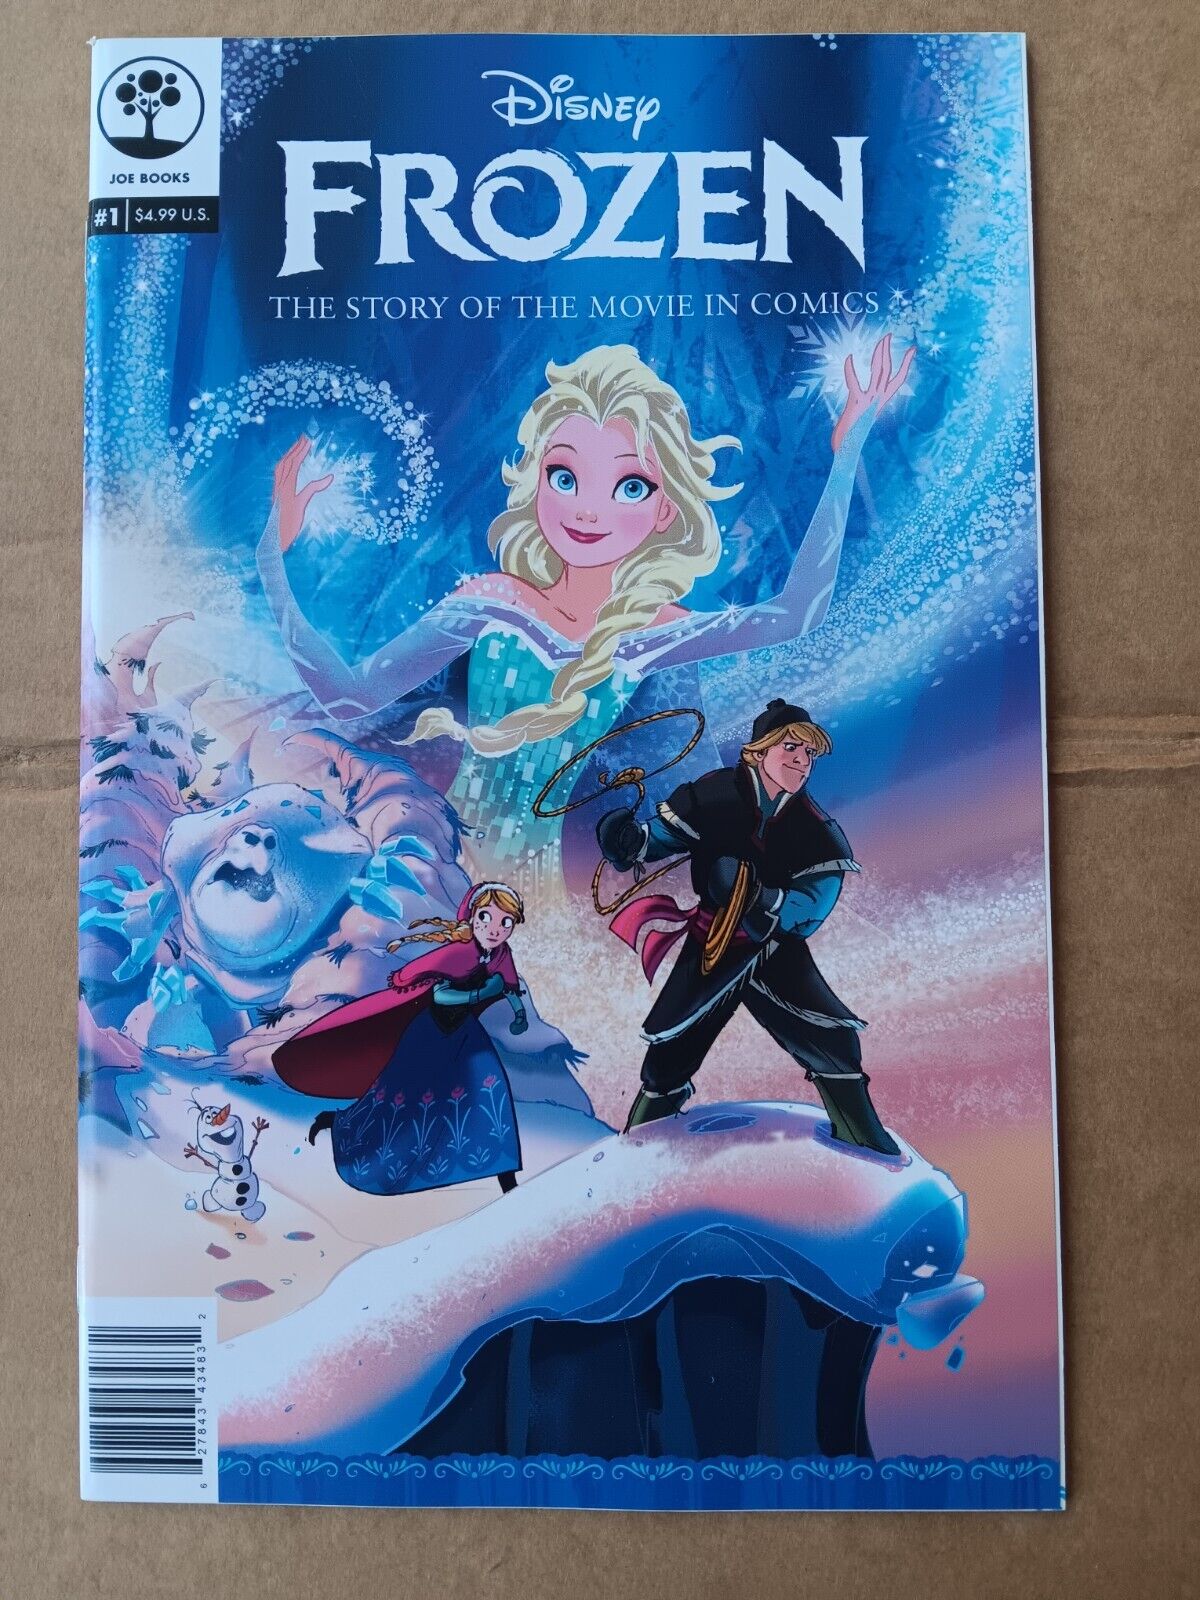 Disney Frozen #1  2nd Print NM Or Better 2015 Joe Books HTF ELSA